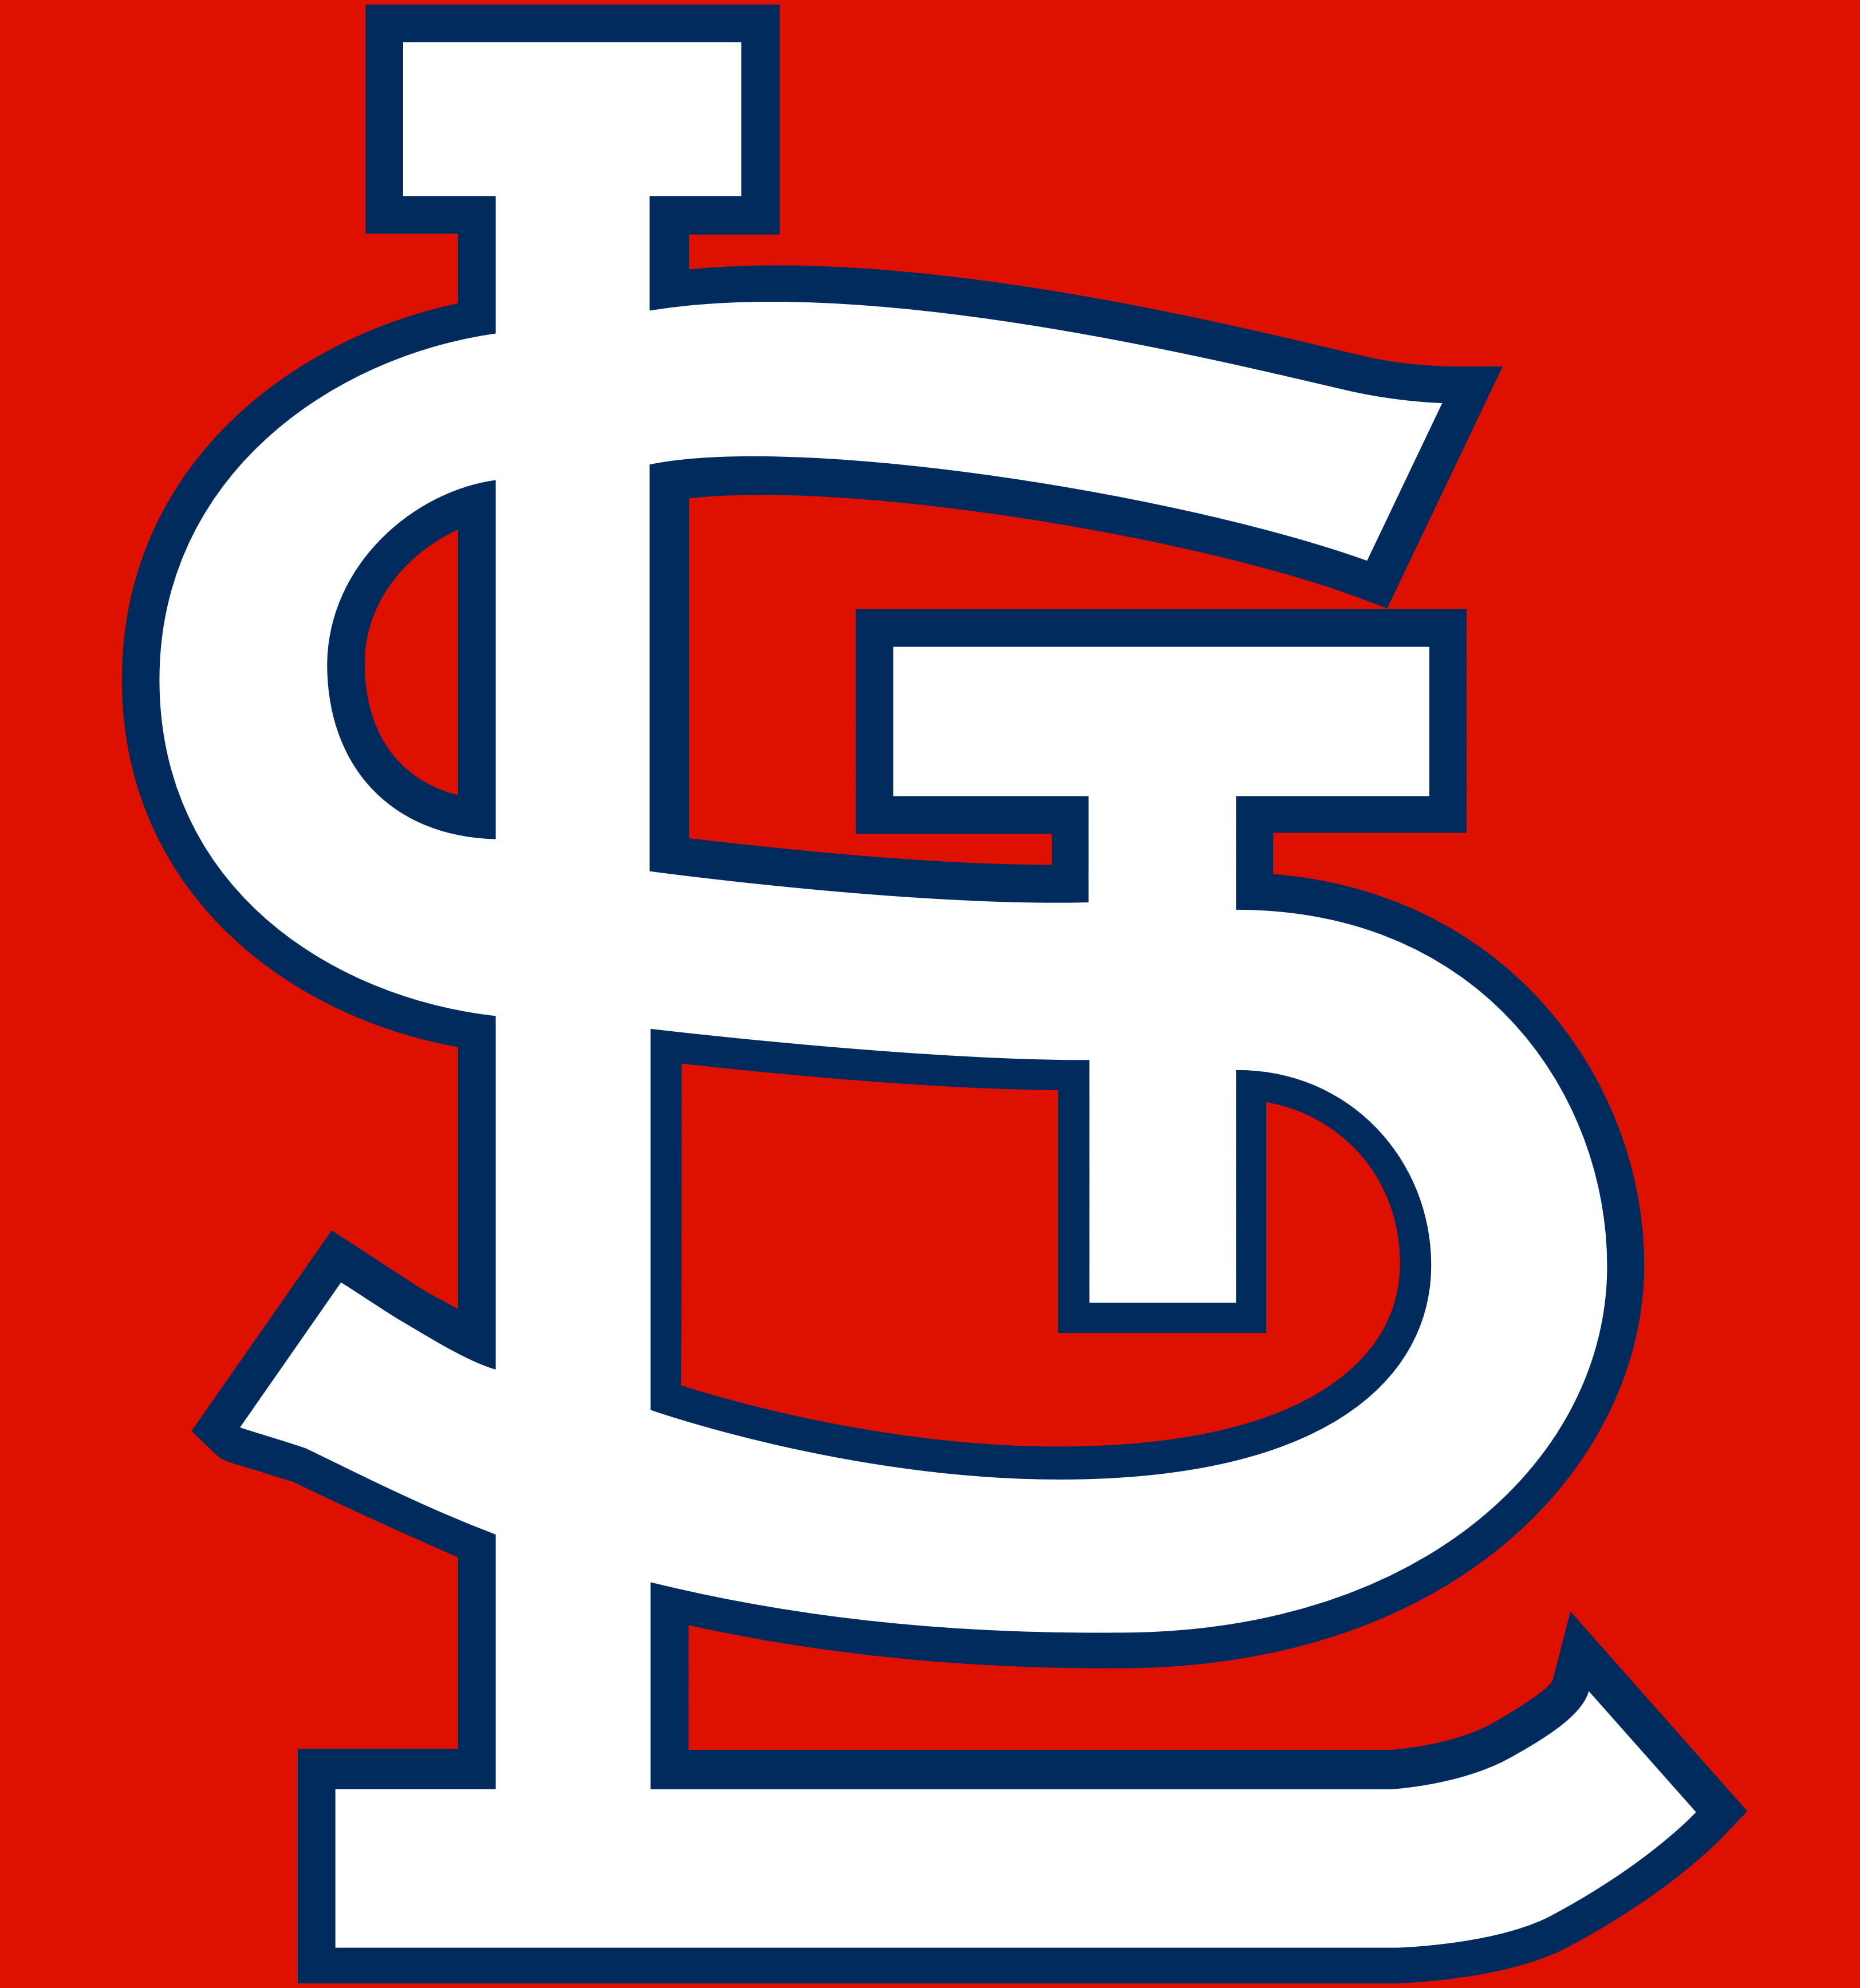 St. Louis Cardinals logo – PixelHooker